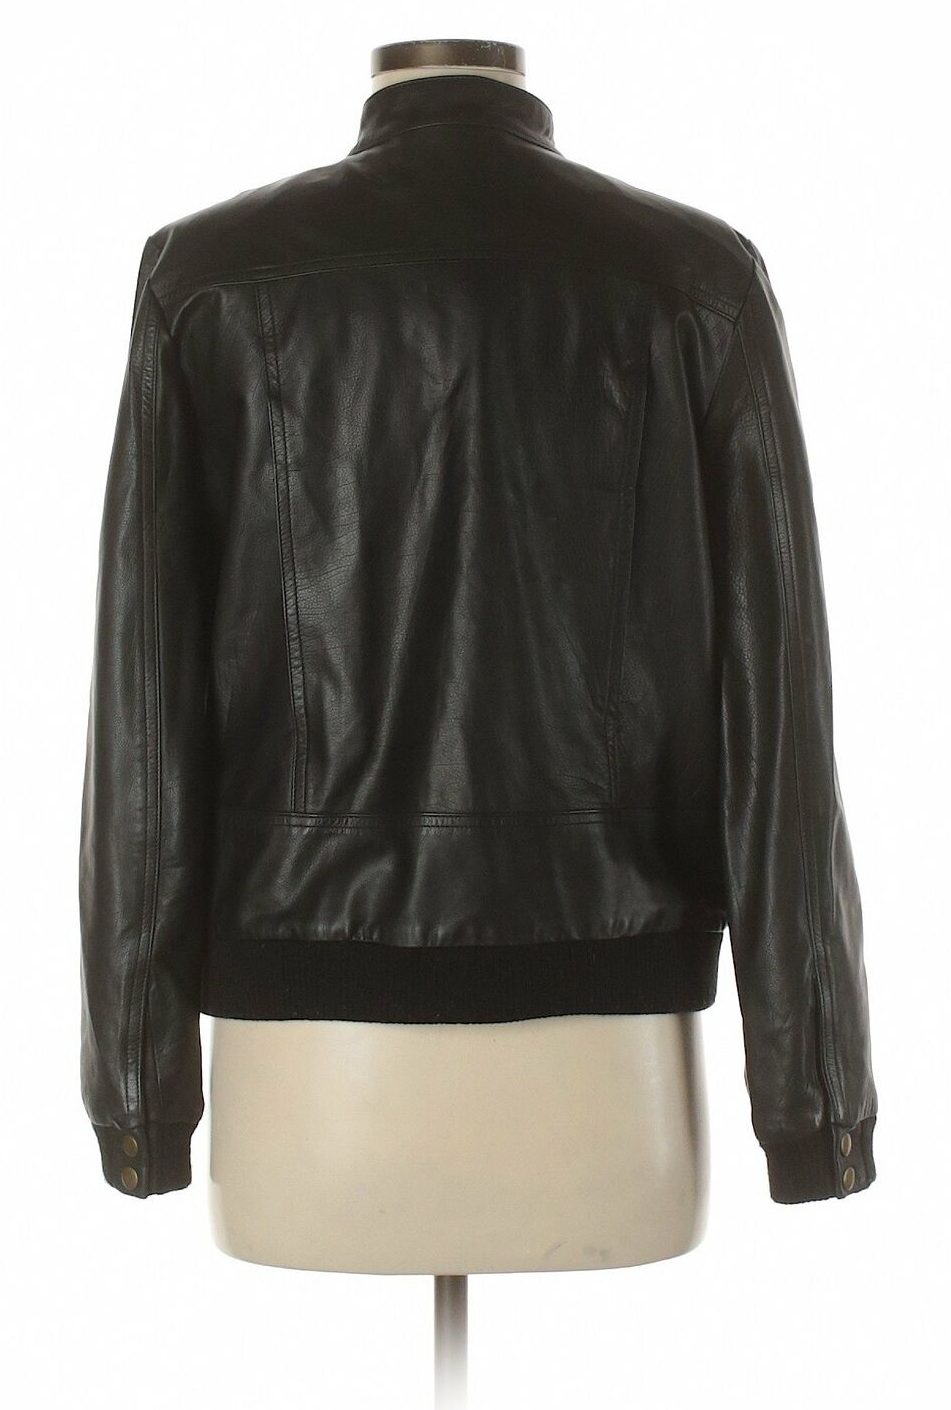 Billy Reid Women Leather Jacket - A2 Jackets